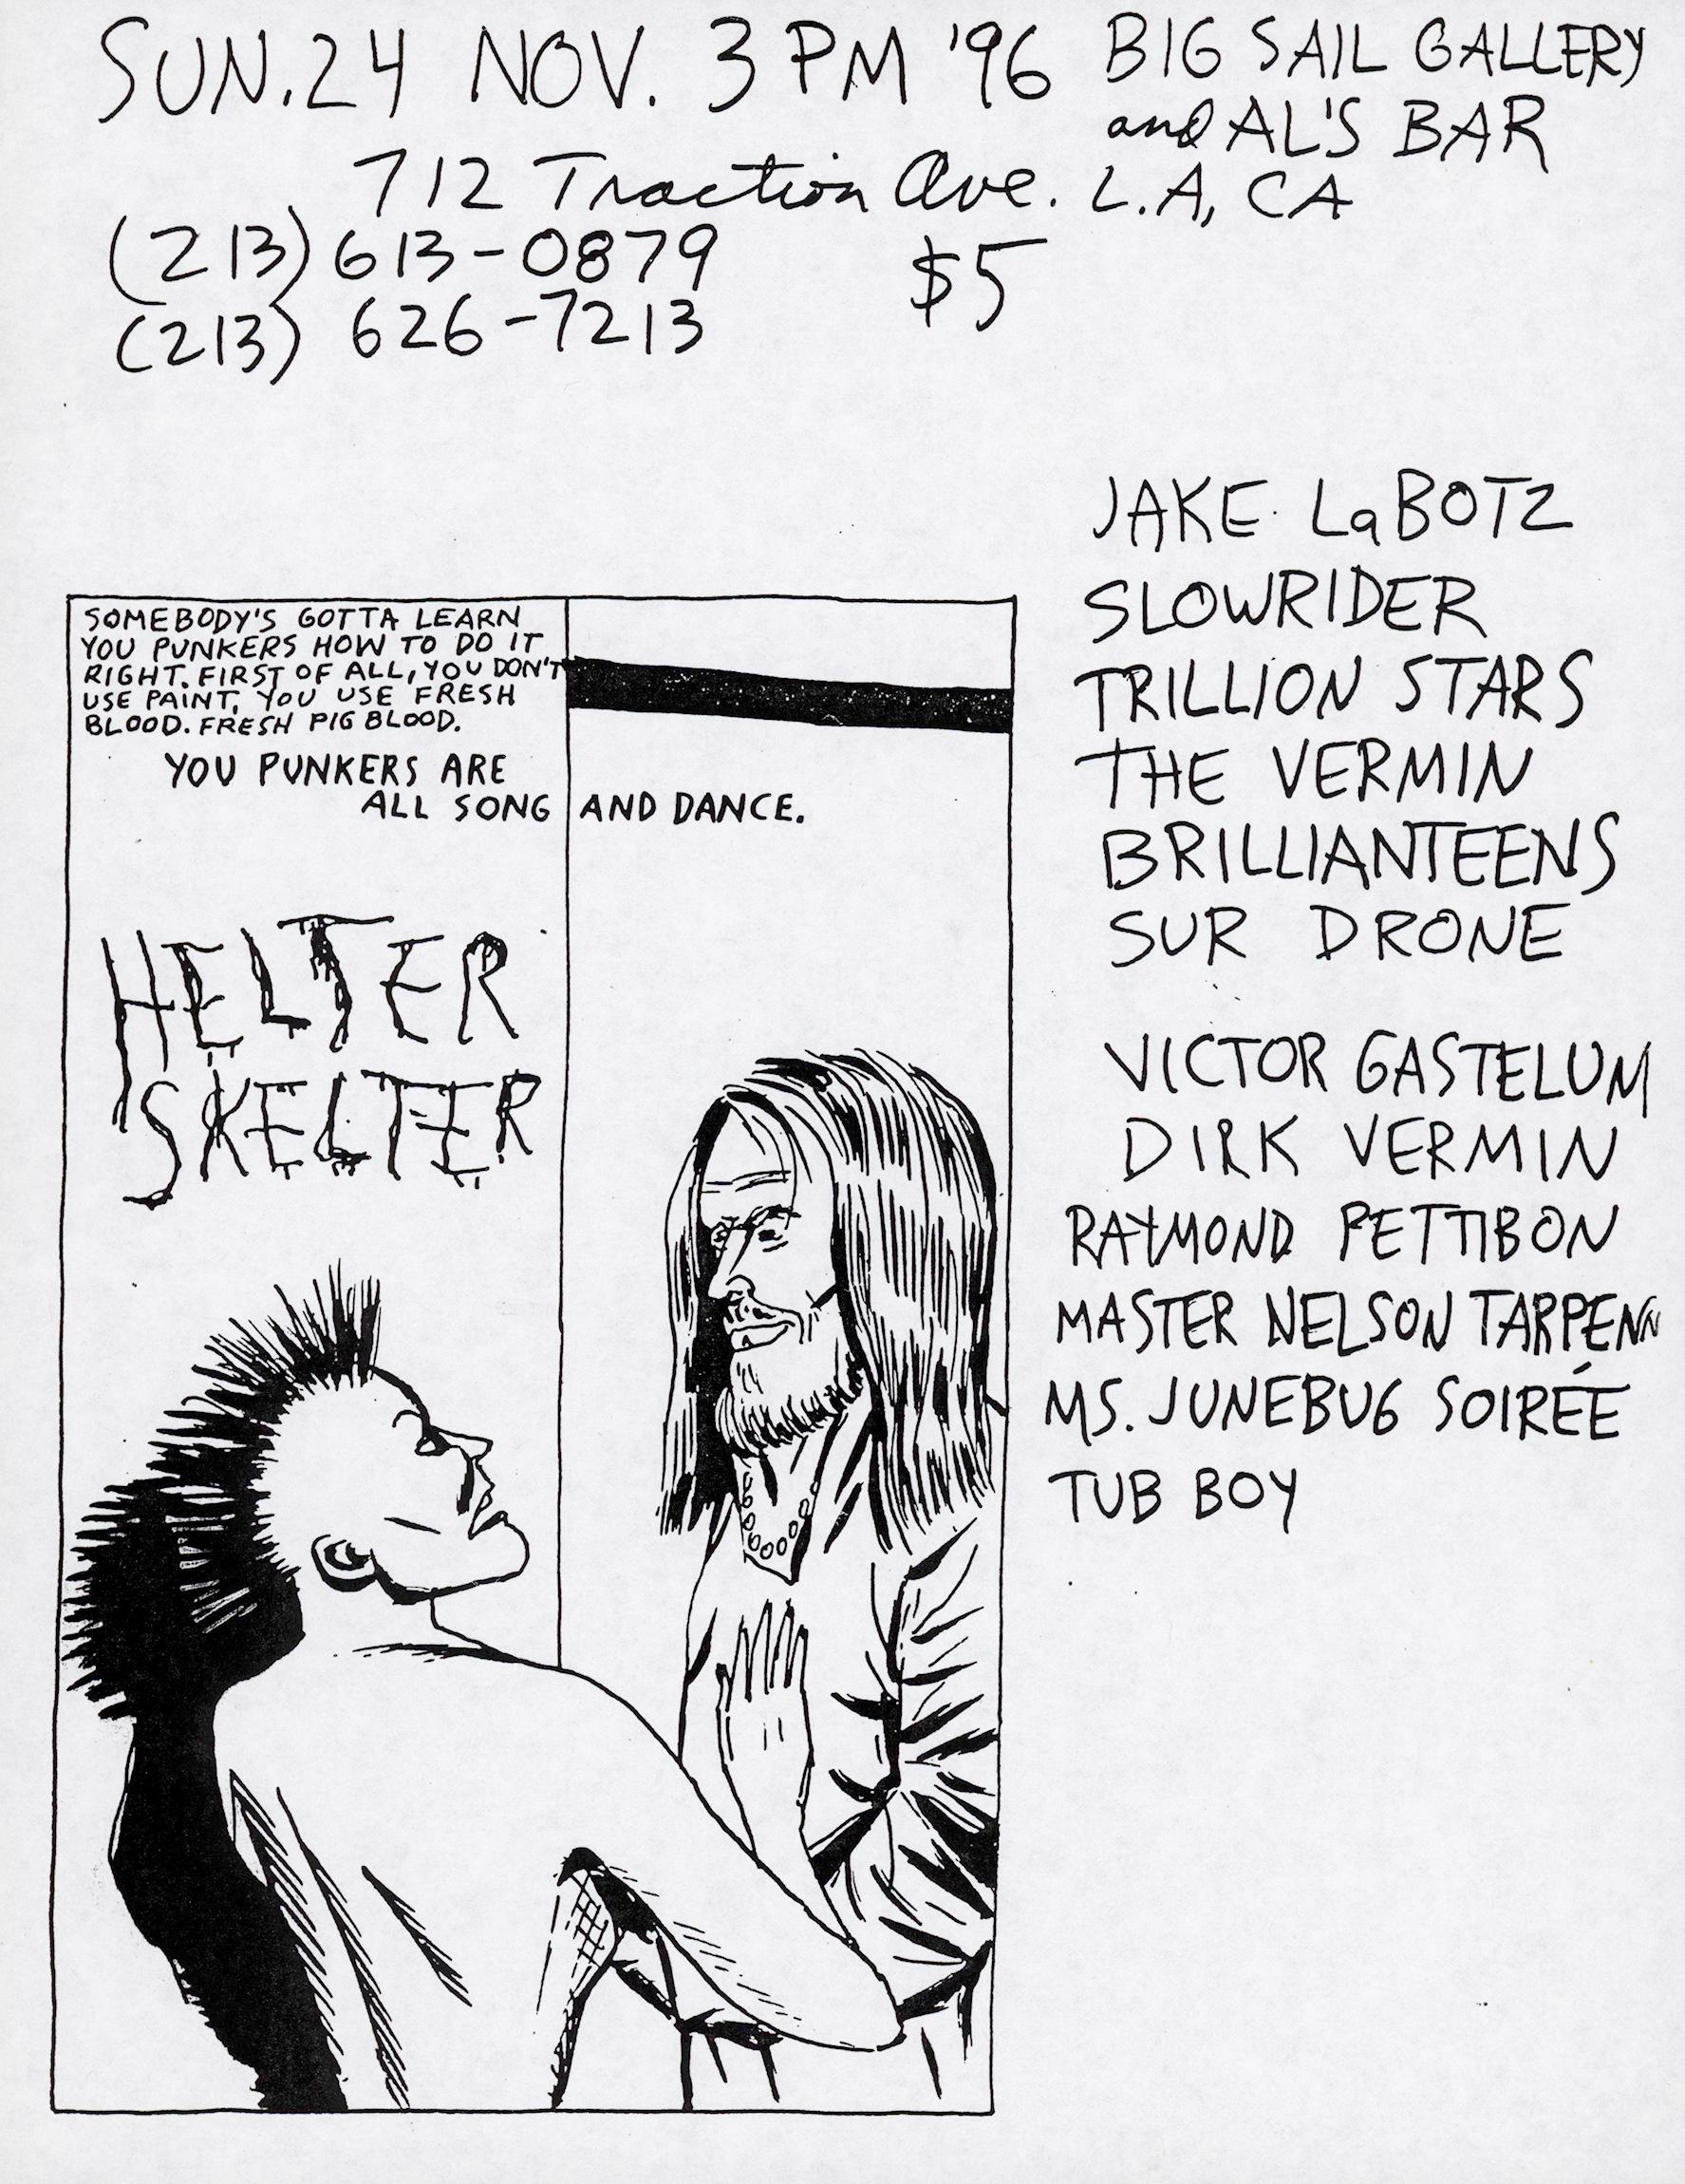 Flyer Punk illustré de Raymond Pettibon 1996 :u2028
Super rare flyer punk de 1996 illustré par Raymond Pettibon pour une salle de Los Angeles, CA où Pettibon s'est produit avec des amis (Pettibon est présenté comme un artiste au milieu en bas à